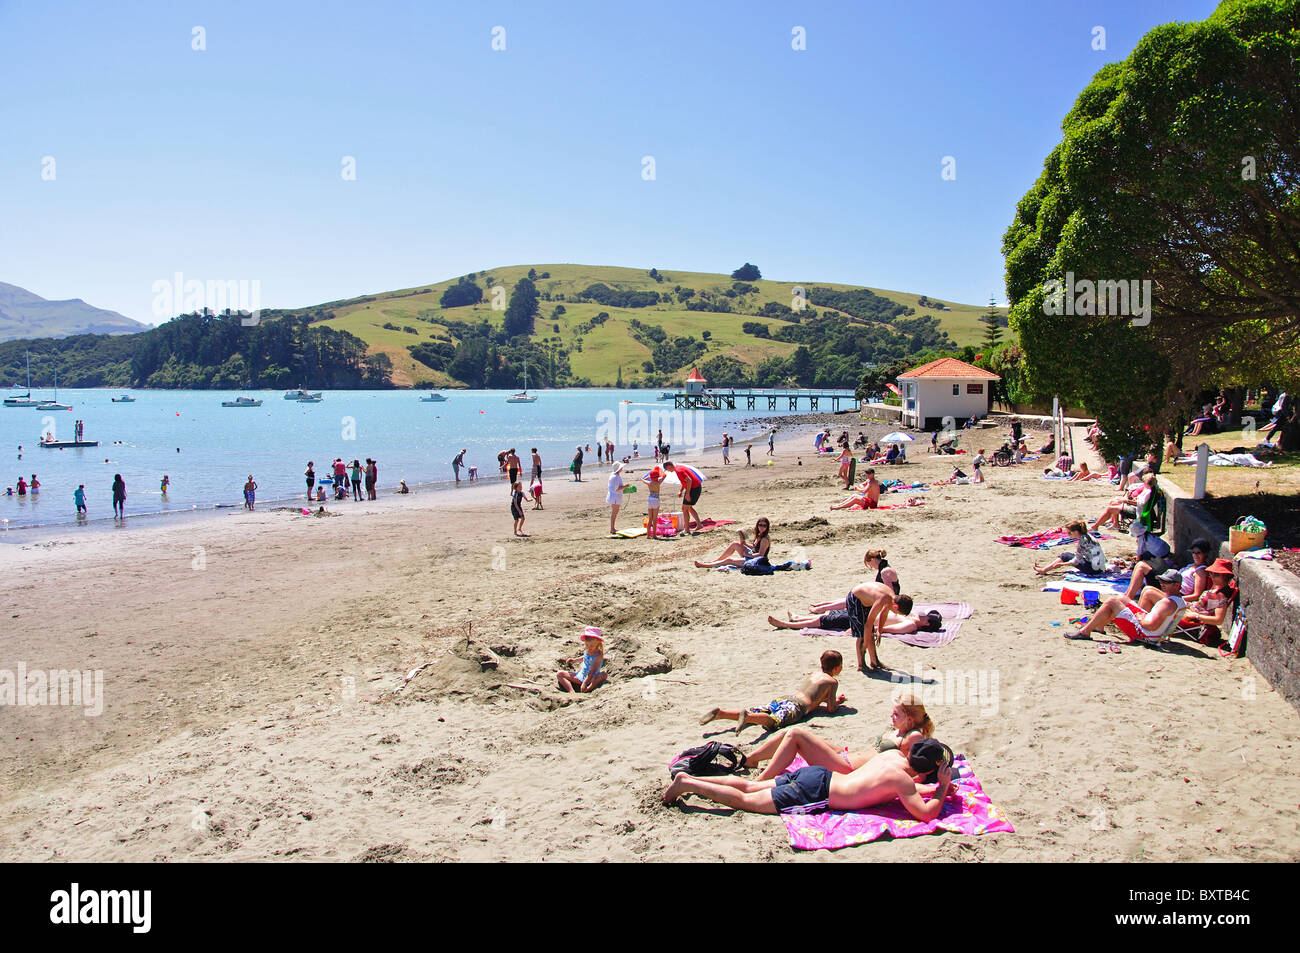 La plage de La Baie Française, Akaroa, la péninsule de Banks, Canterbury, Nouvelle-Zélande Banque D'Images